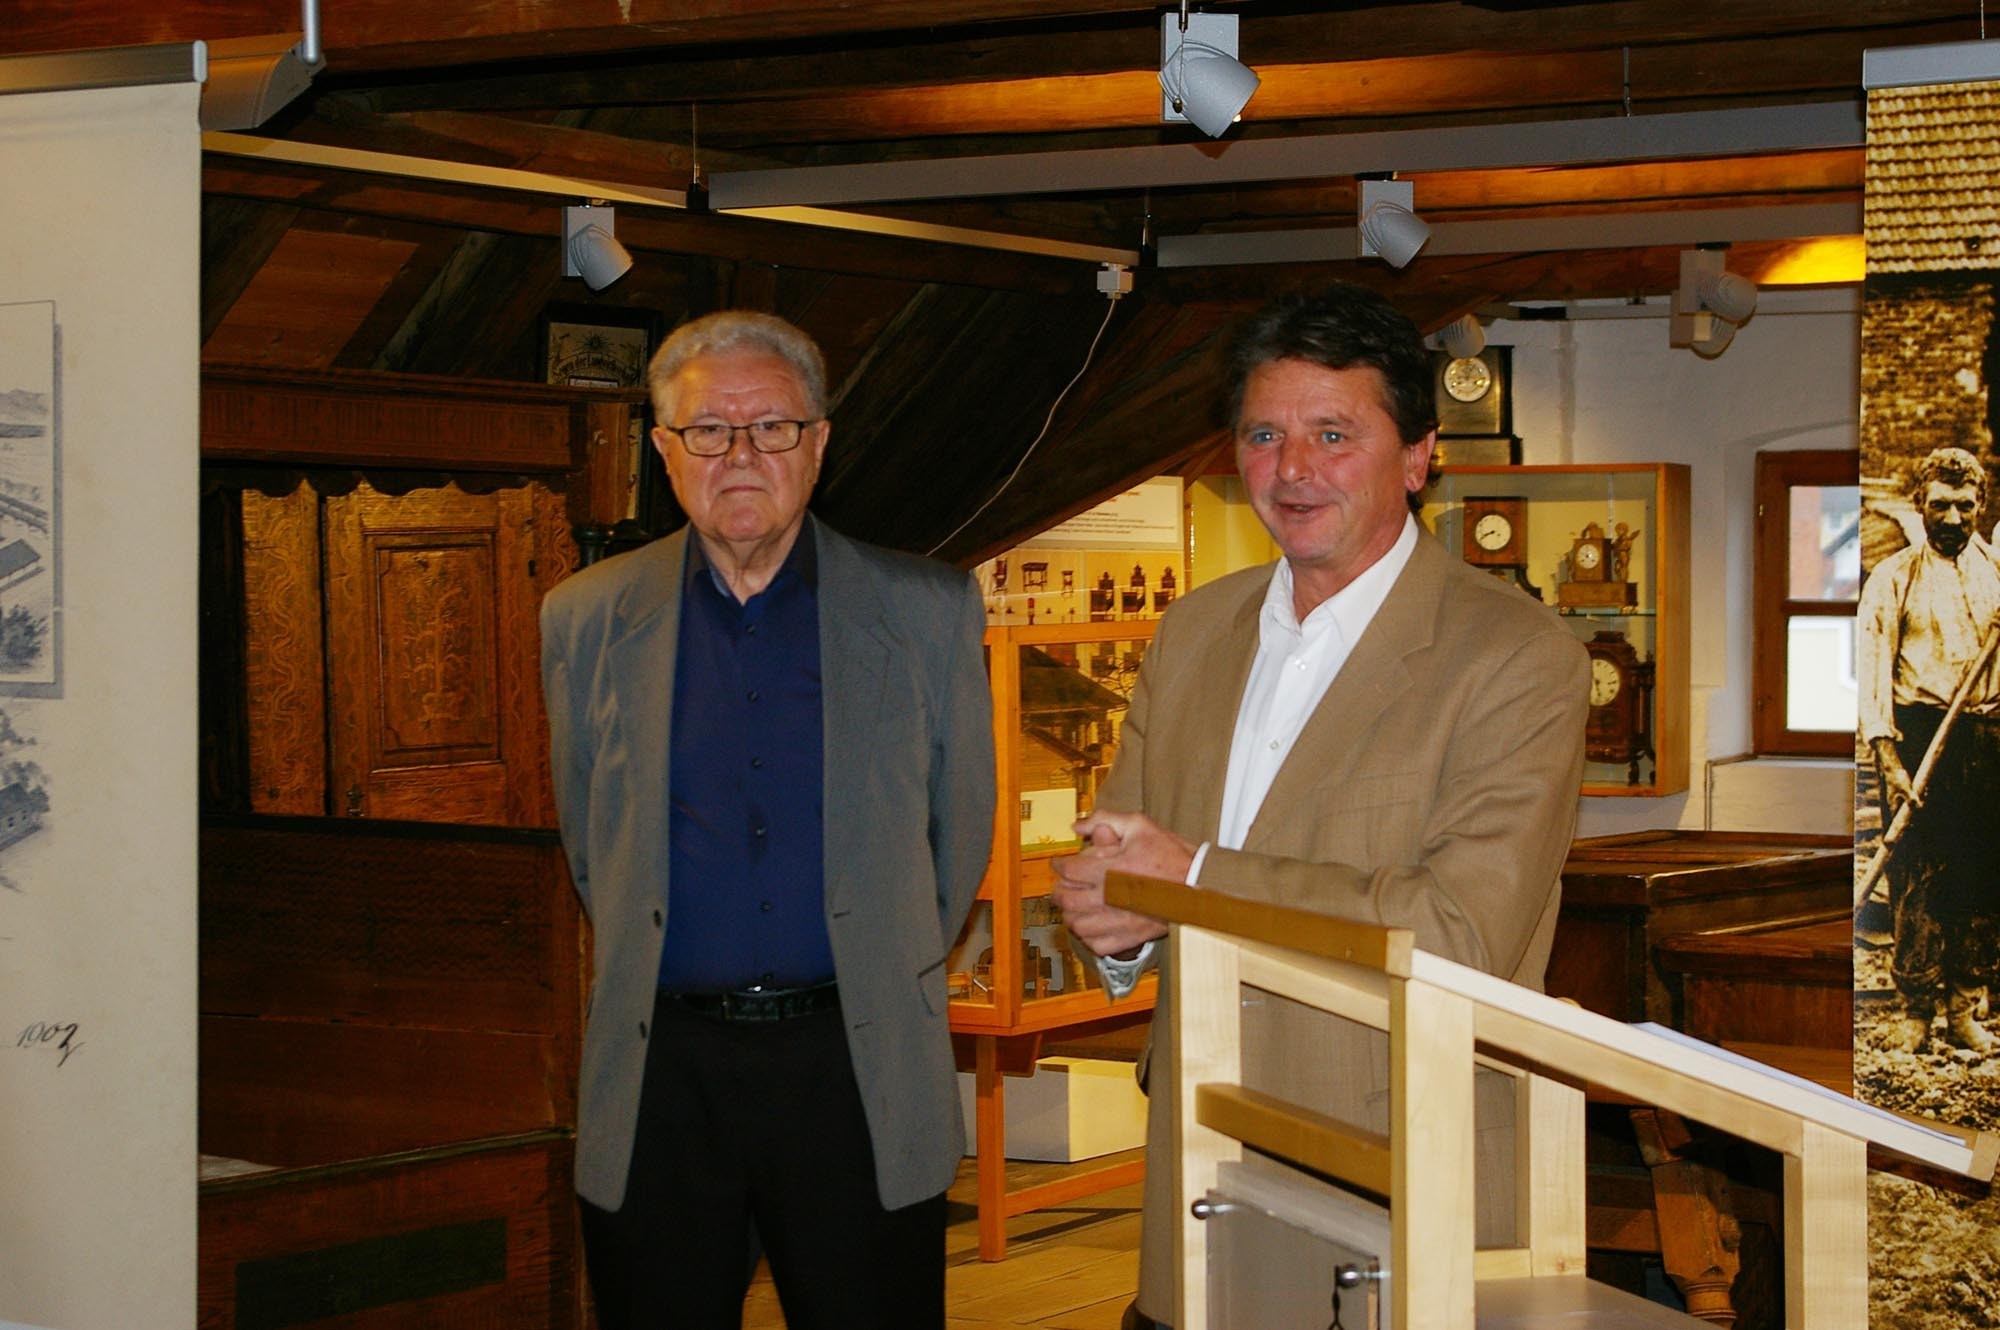 Erster Bürgermeister Helmut Haider (rechts) drückt in einem Grußwort seine Verbundenheit zum Heimatmuseum aus.